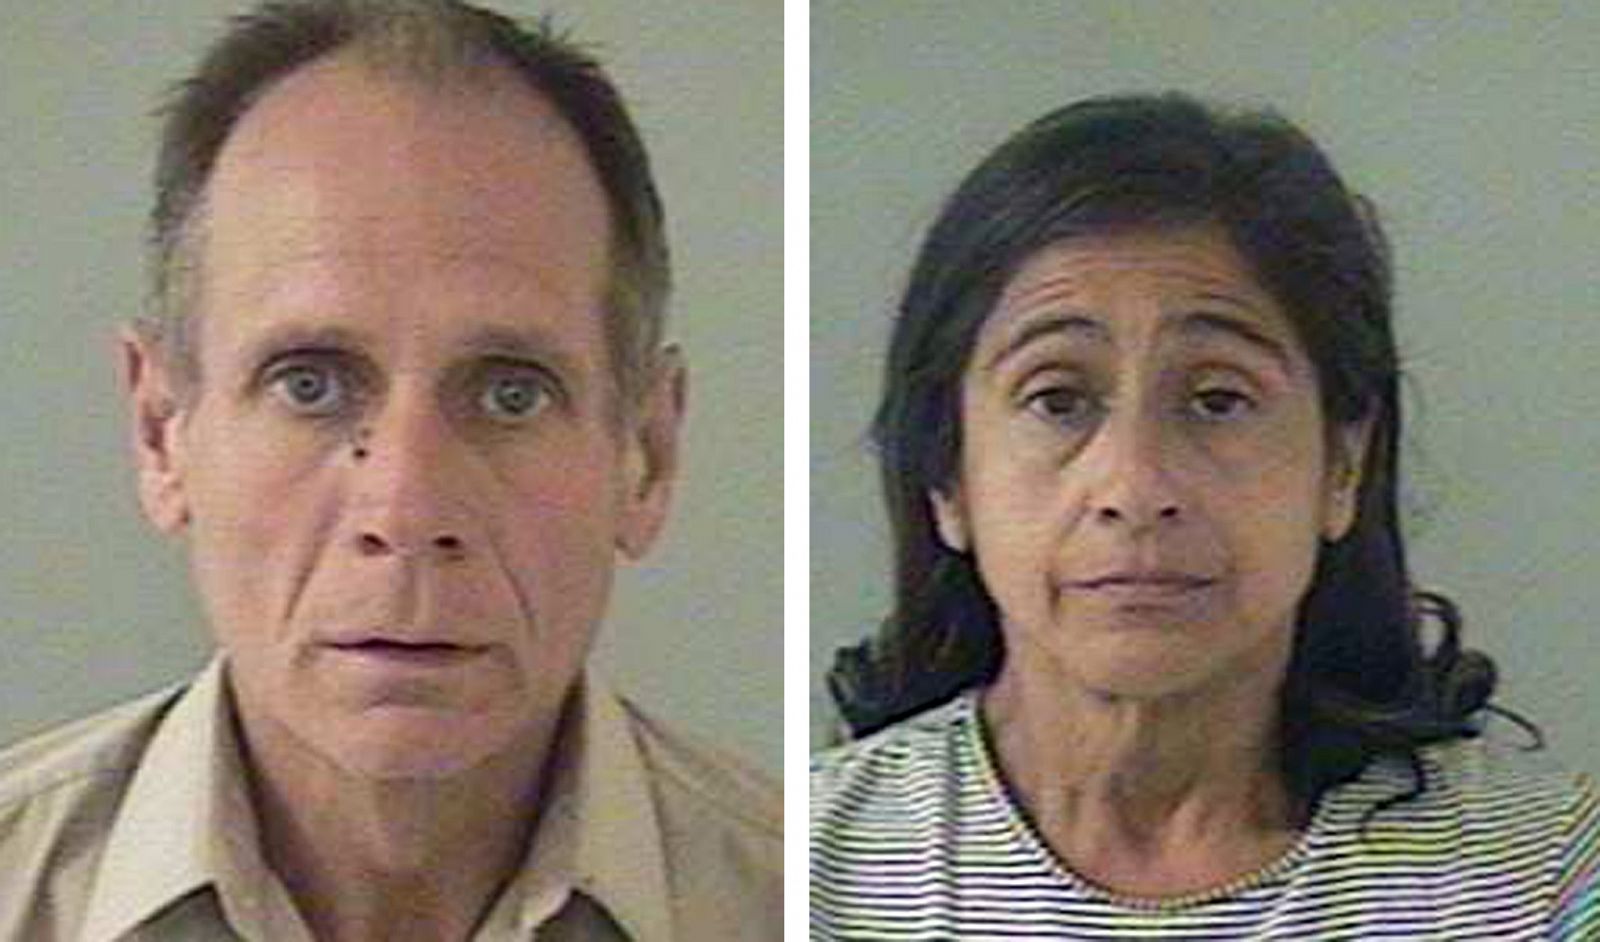 El matrimonio Garrido, Phillip y Nancy, condenado por el secuestro y la violación de Jaycee Dugard durante 18 años.